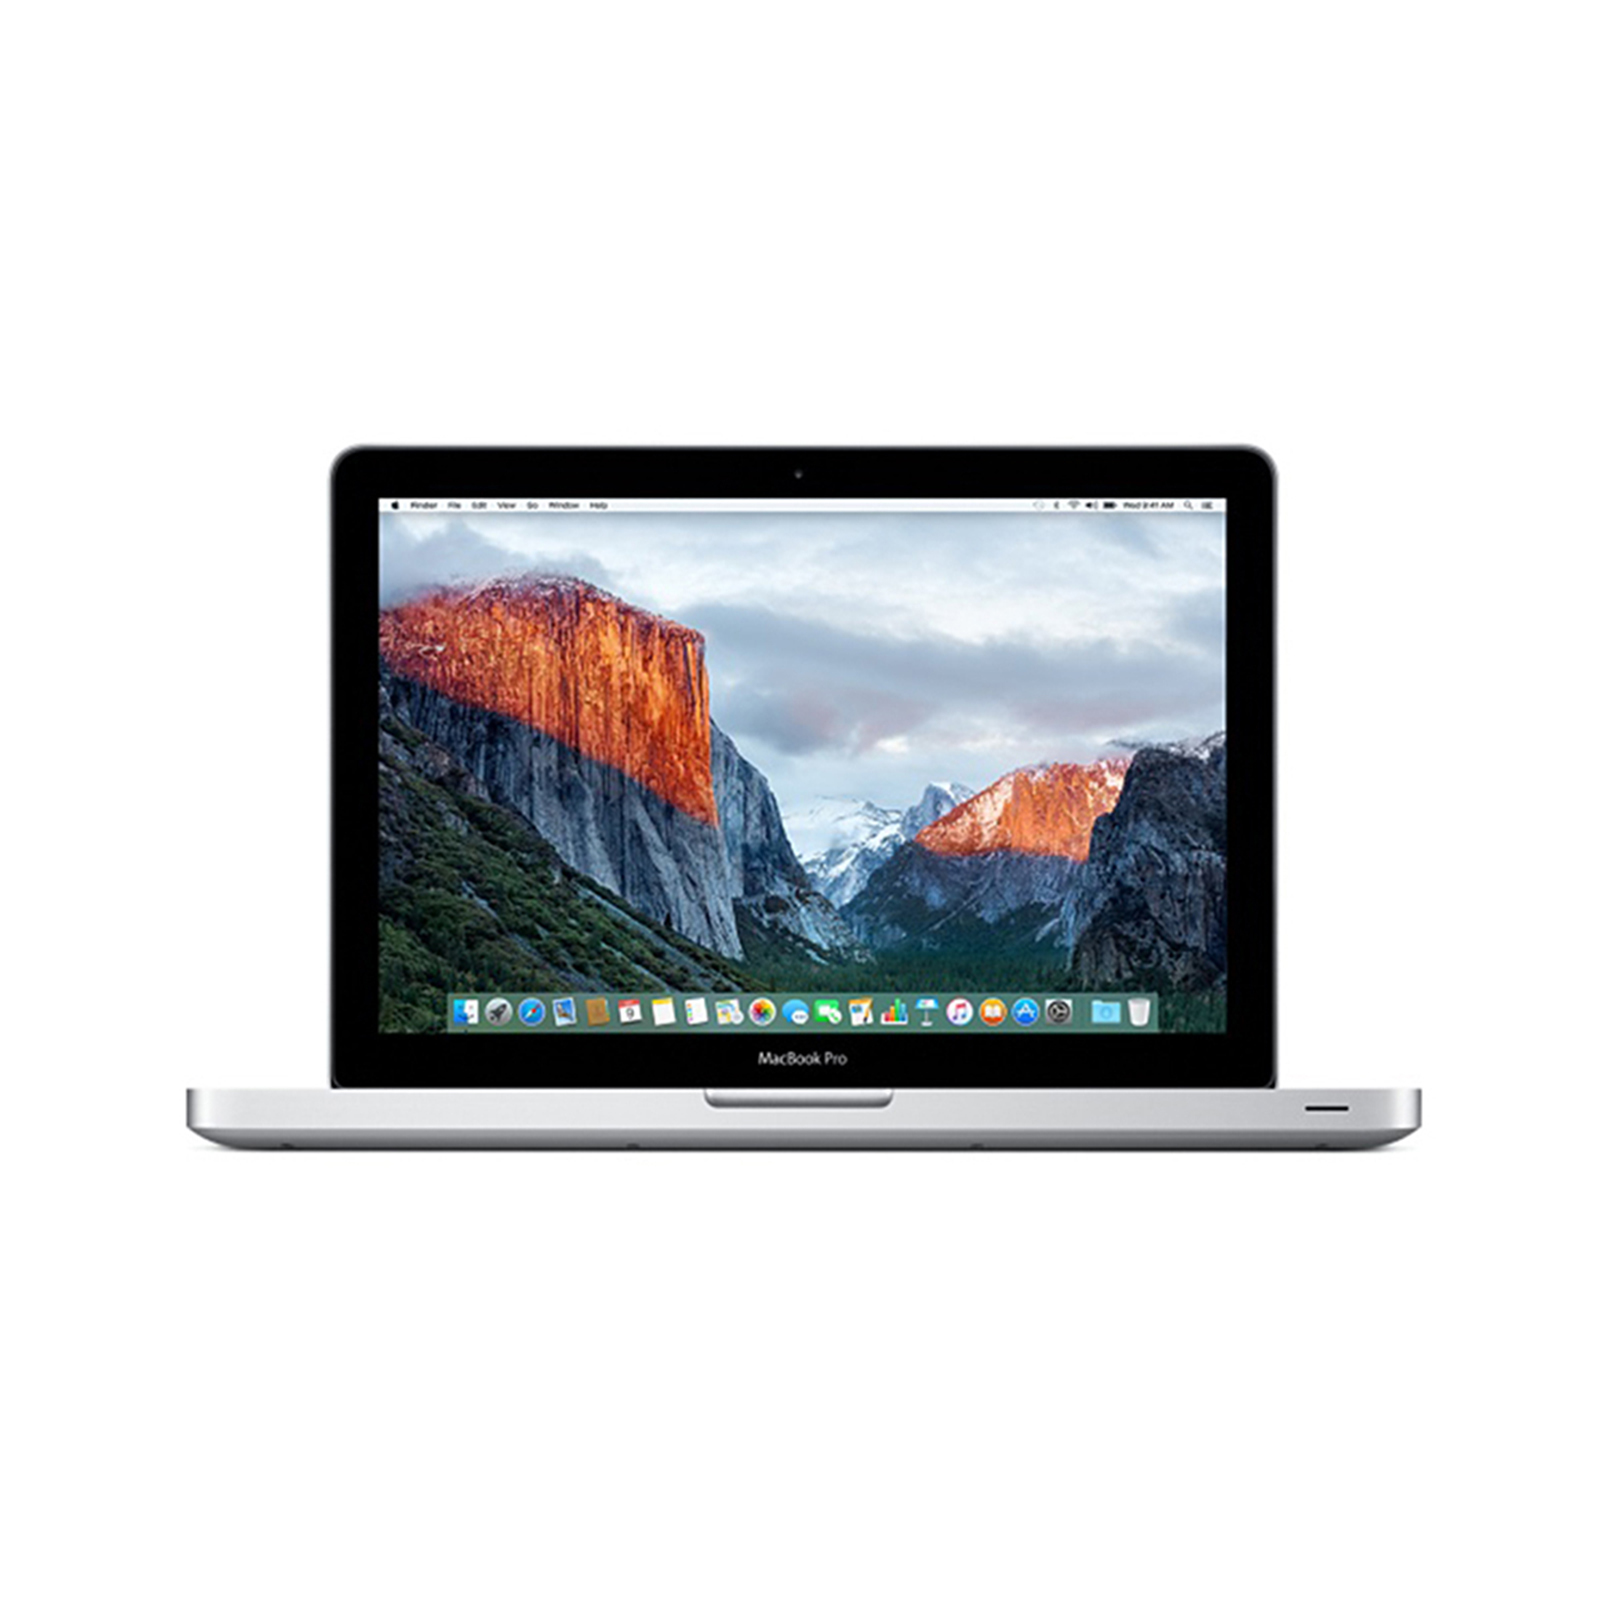 MacBook Pro 13" Mid 2012 - Core i5 2.5Ghz / 4GB RAM / 500GB HDD